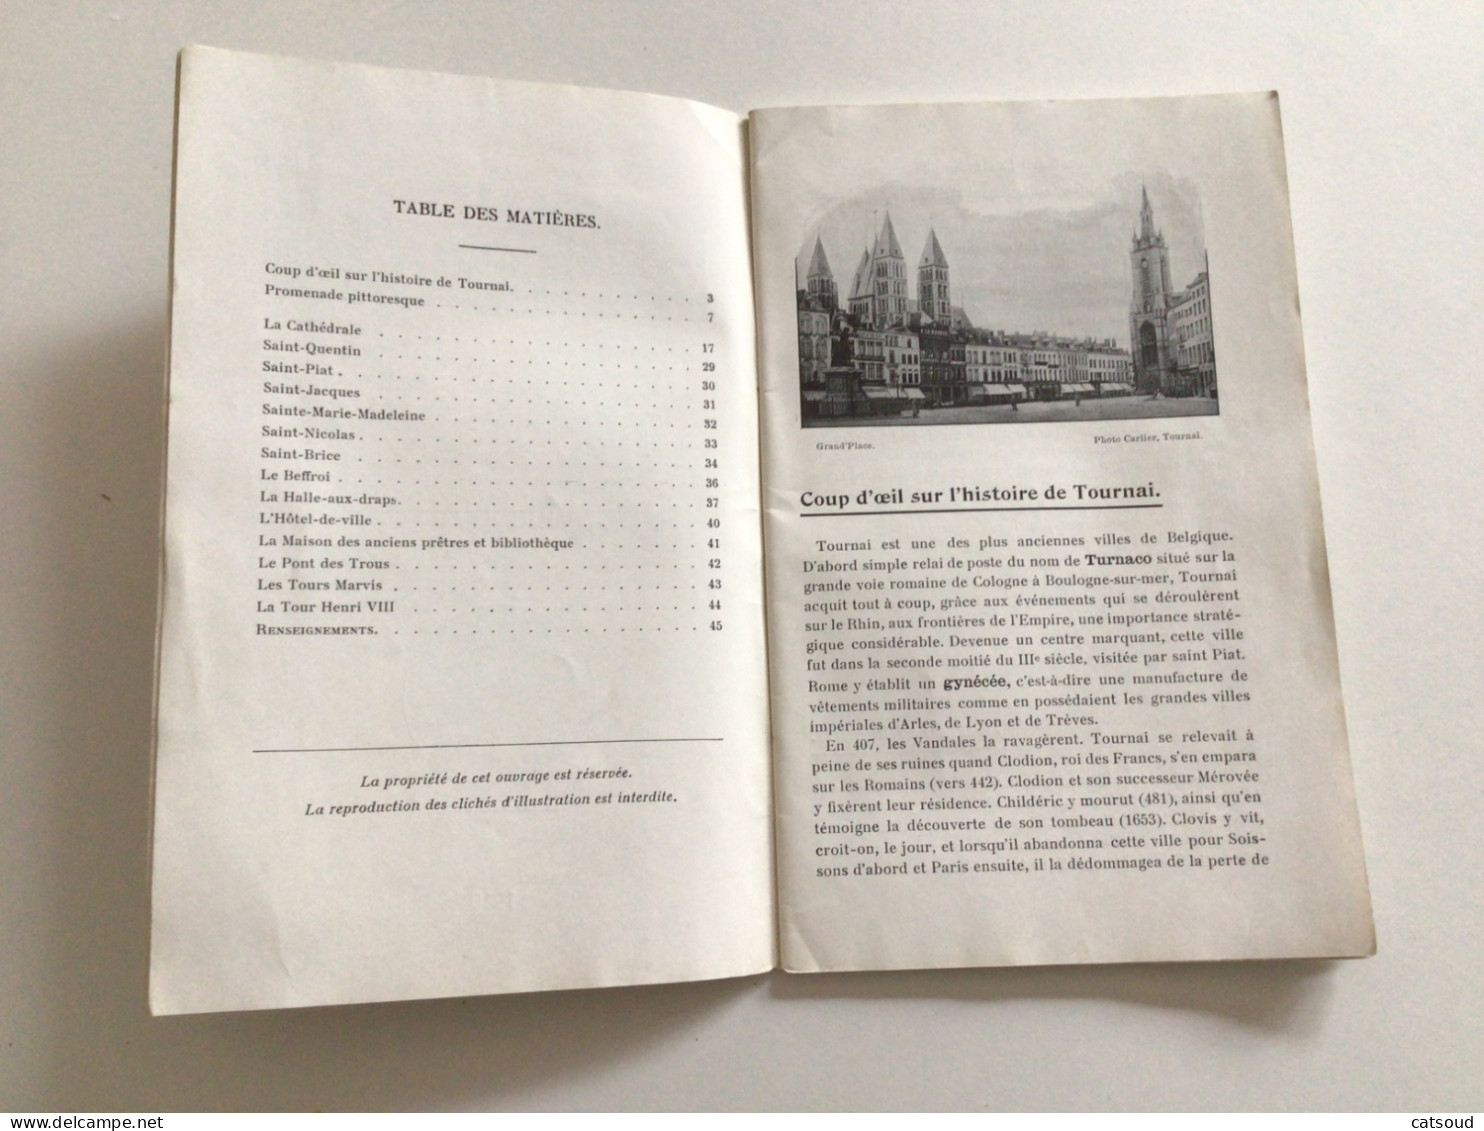 Ancien Livret (1910) Tournai Ville D’Art Imprimé Par Les Établissements Casterman S.A. , Imprimeurs De La Ville - Tourismus